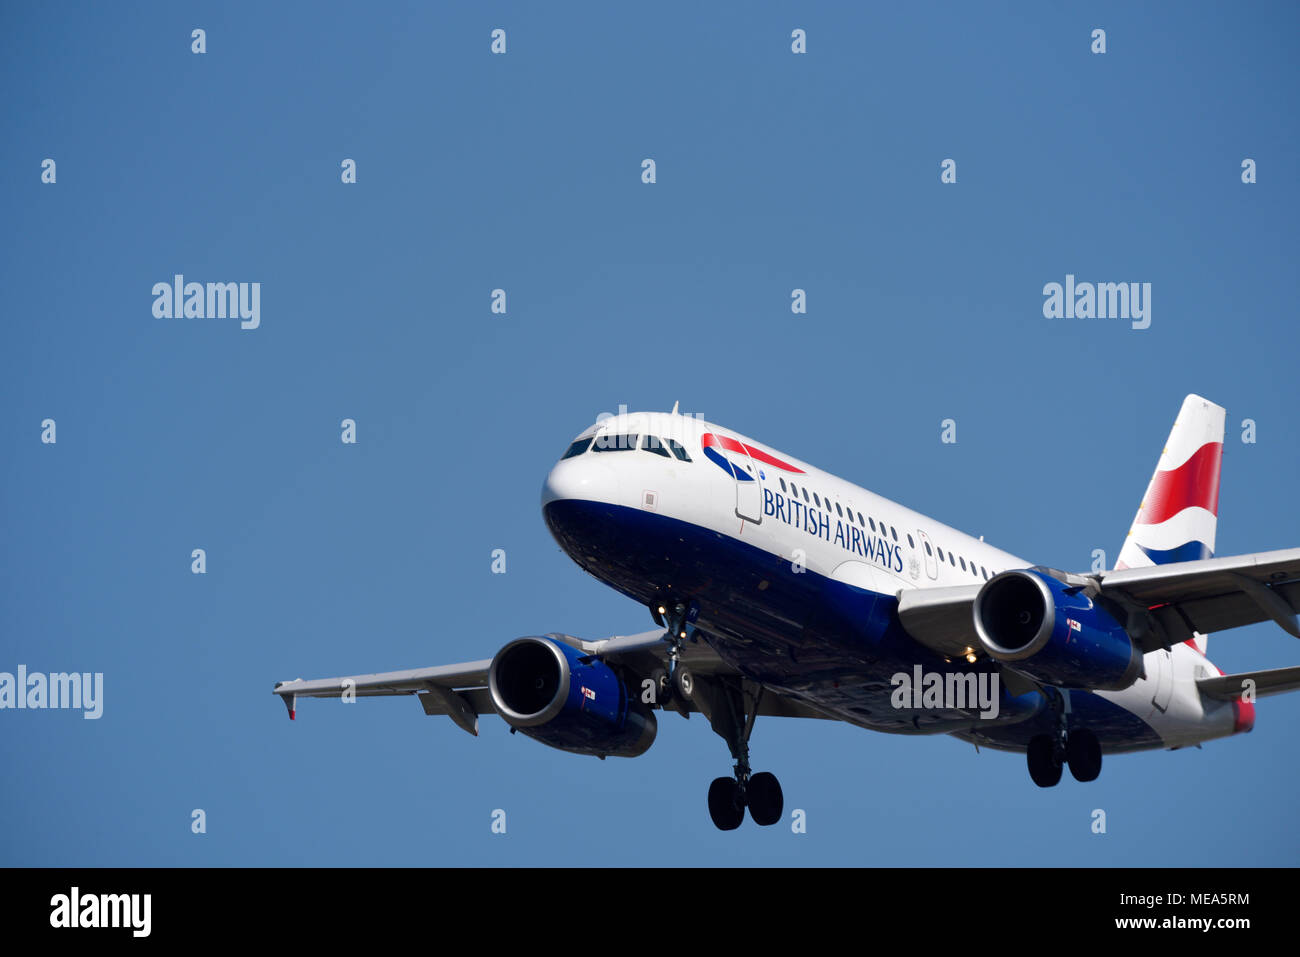 British Airways Airbus A319-Jet-Flugzeug, das am Flughafen London Heathrow, Großbritannien, in blauer Luft landet. A319-131 G-EUPY. Großer Copyspace Stockfoto